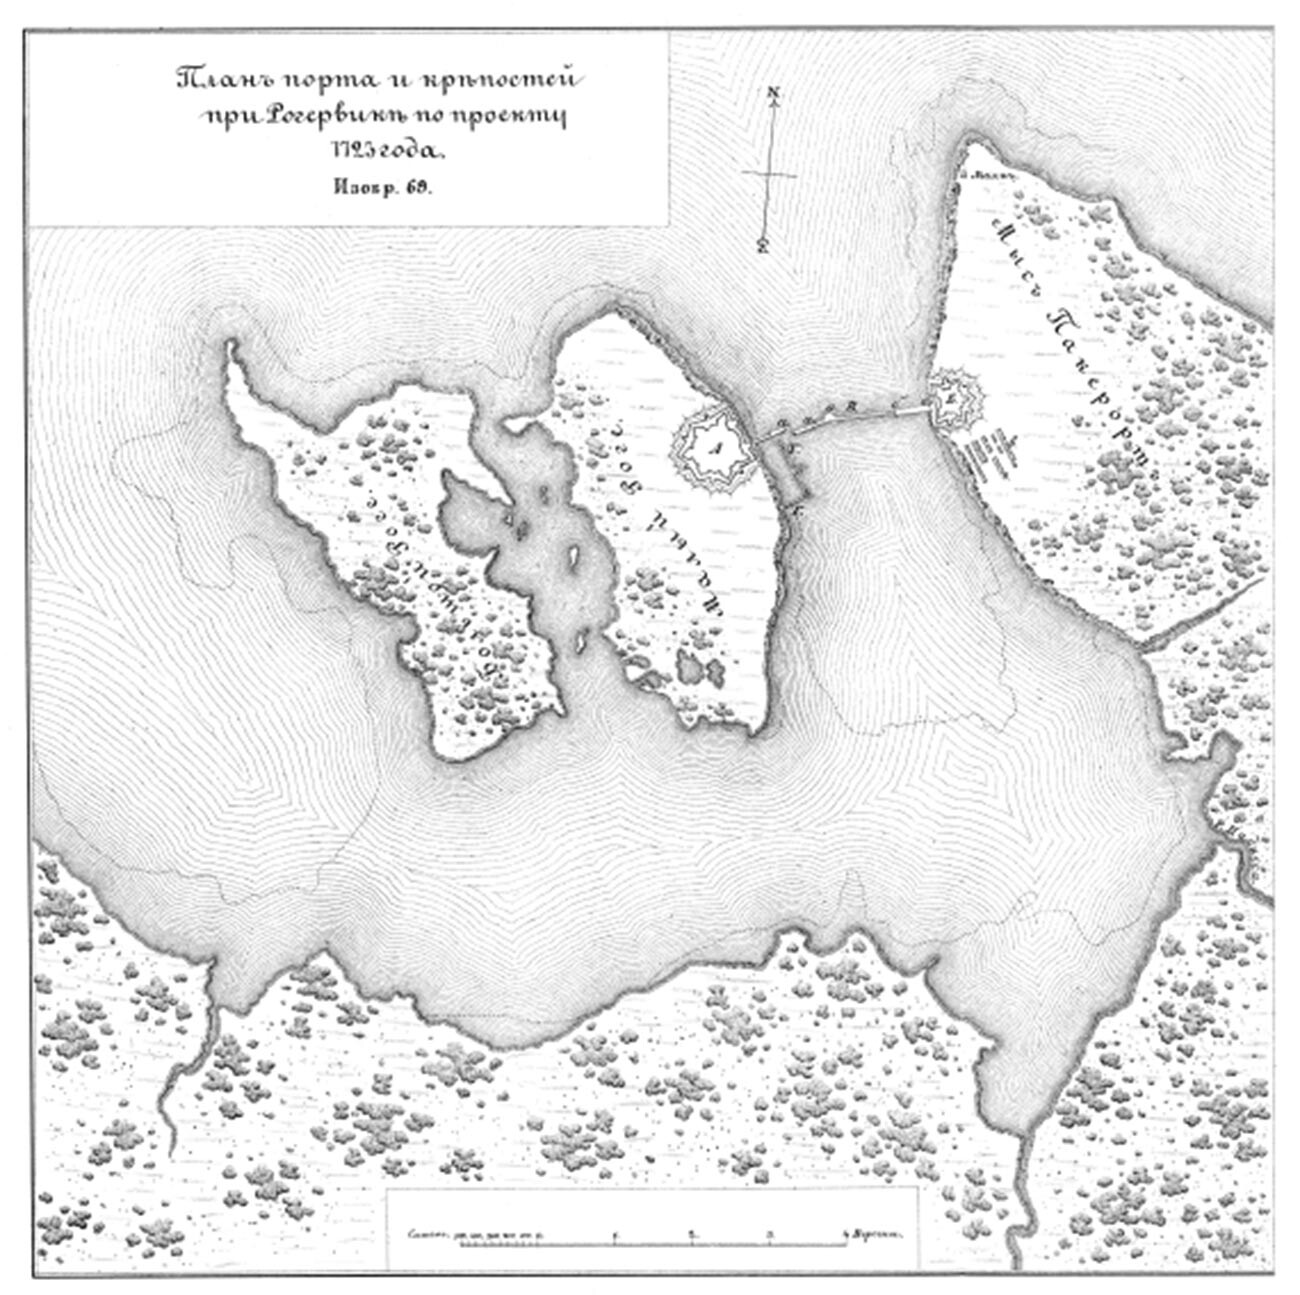 Port et forteresse de Ragervik selon le projet de 1723